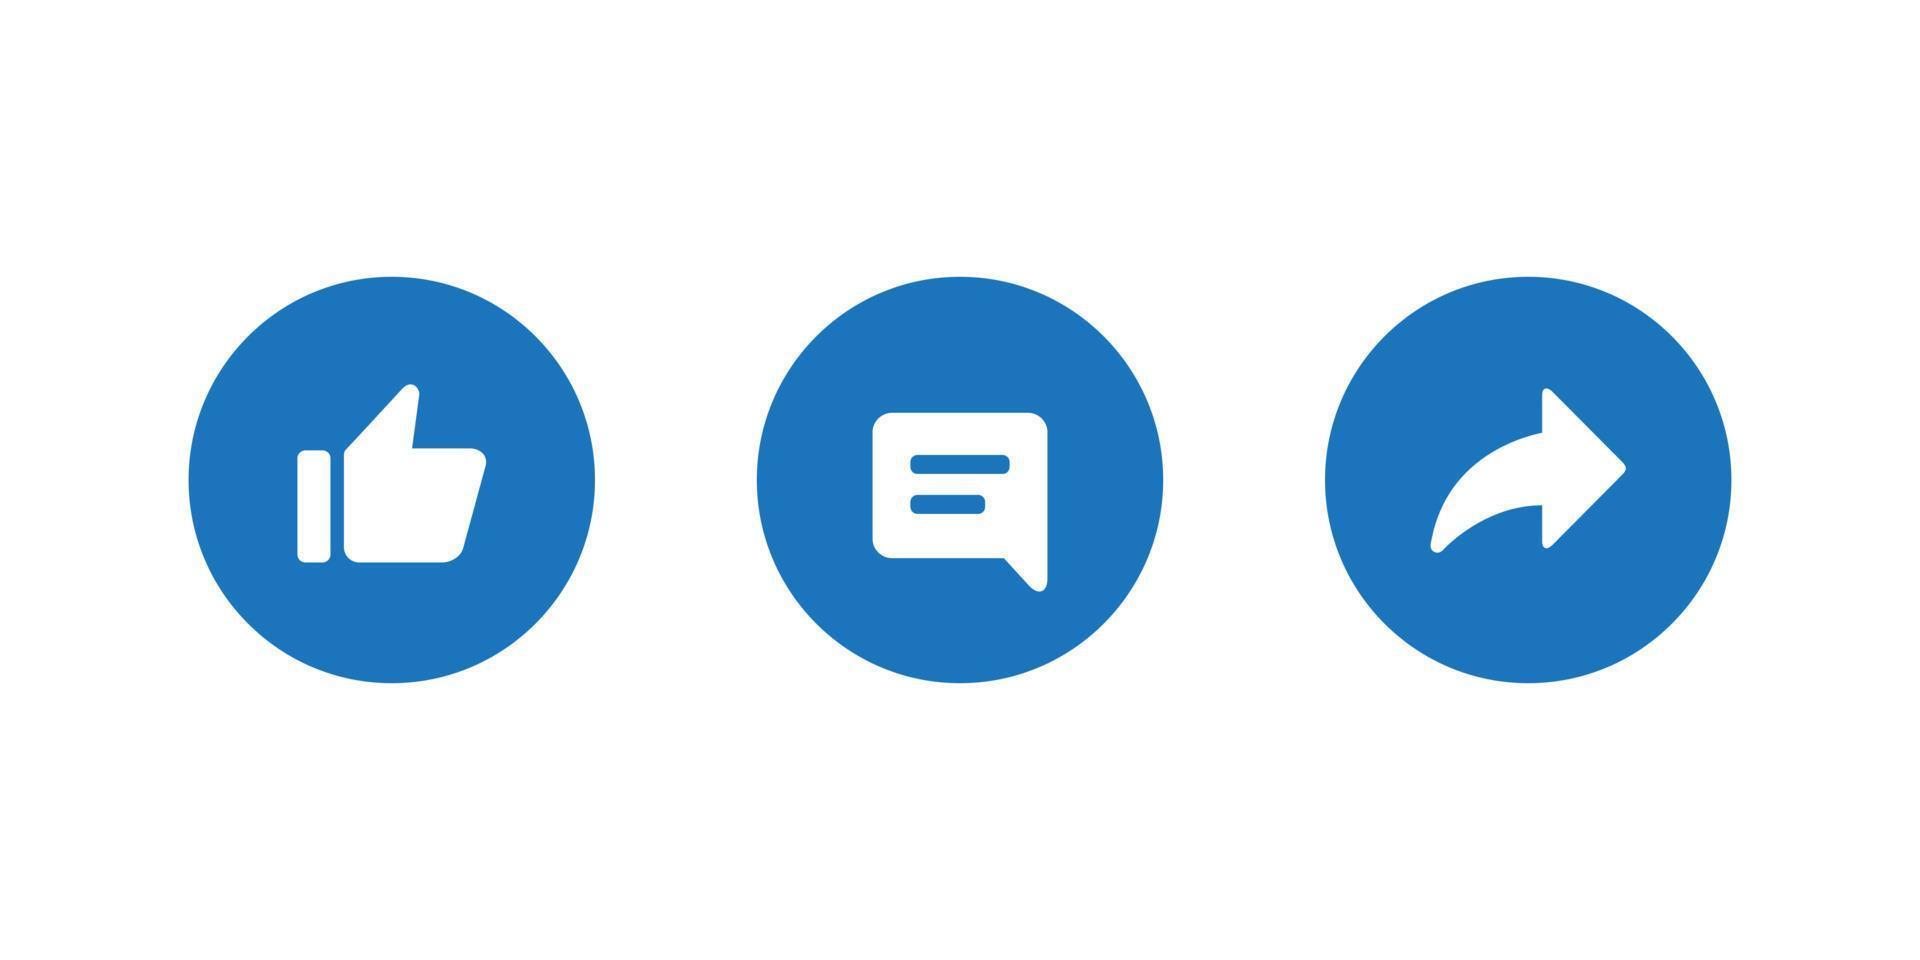 me gusta, comentar y compartir vector de icono de botón en estilo plano